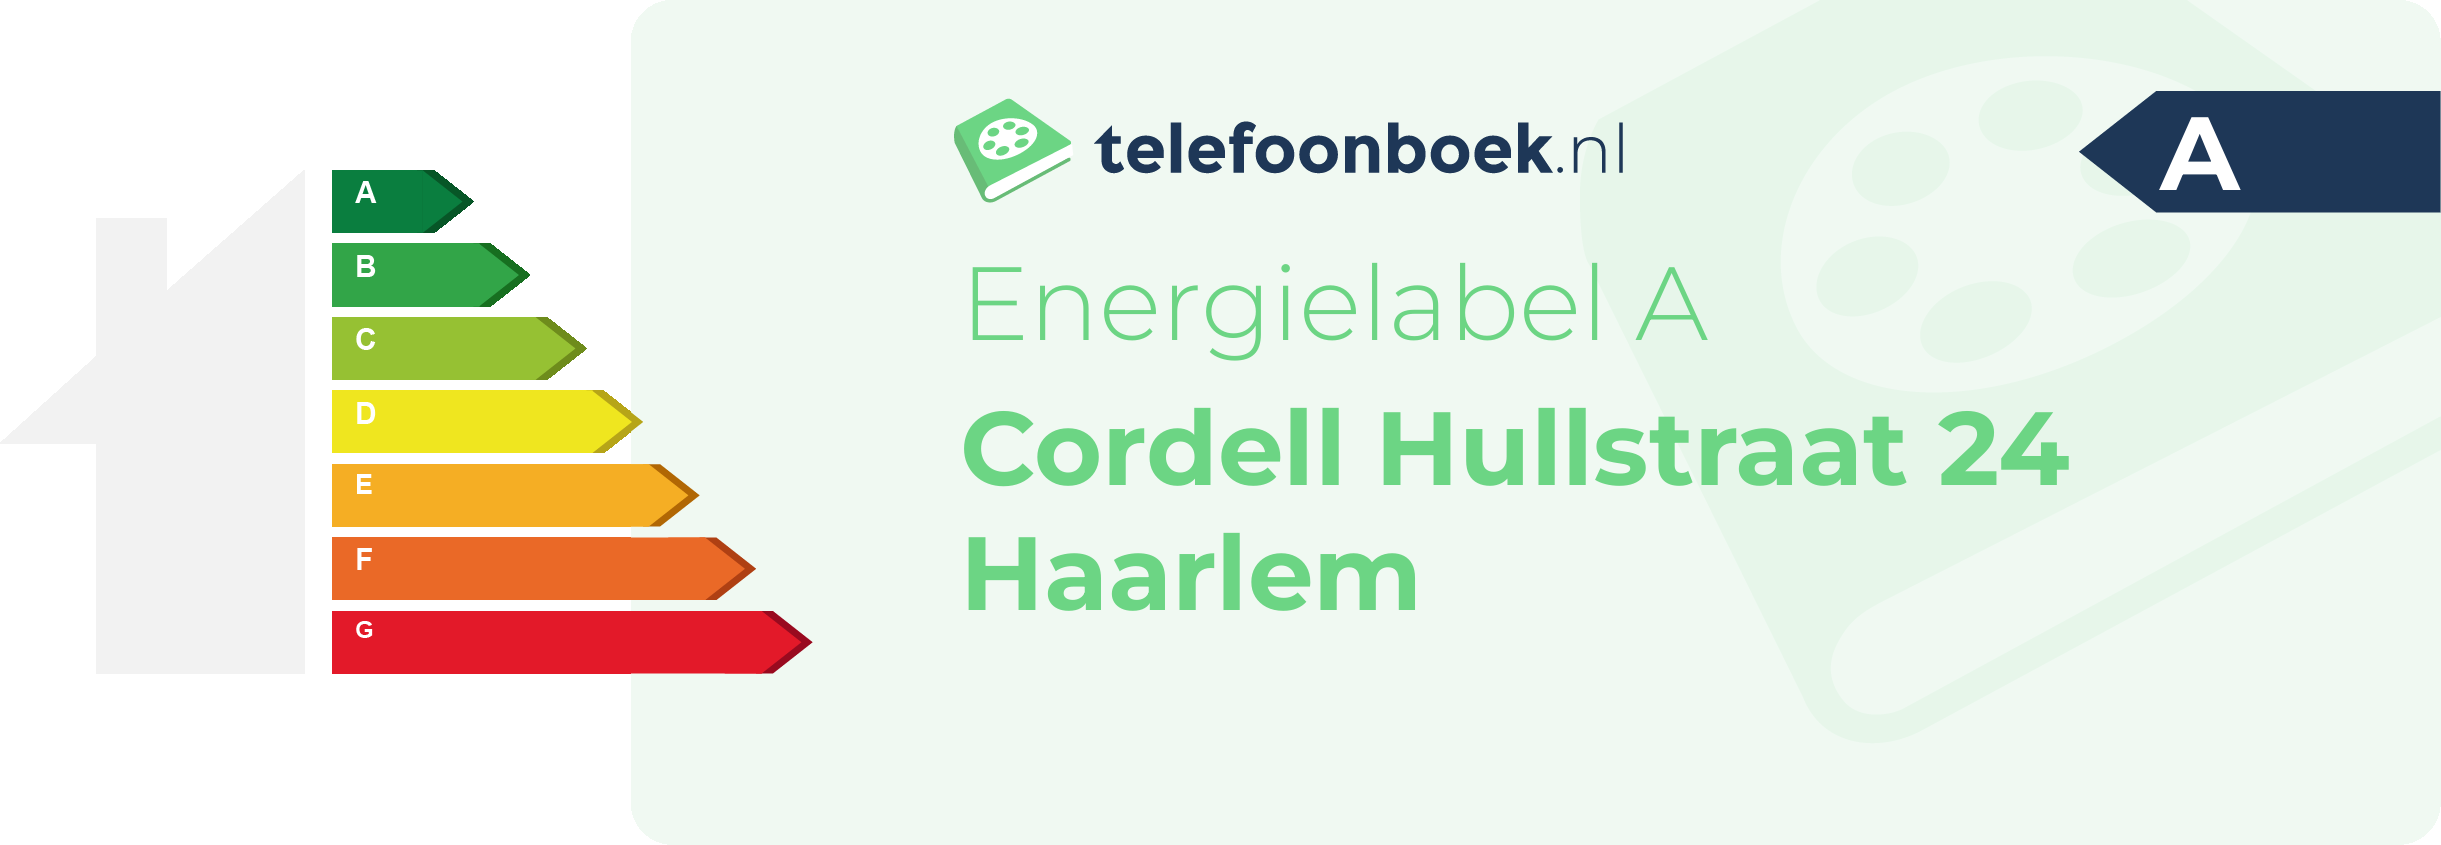 Energielabel Cordell Hullstraat 24 Haarlem